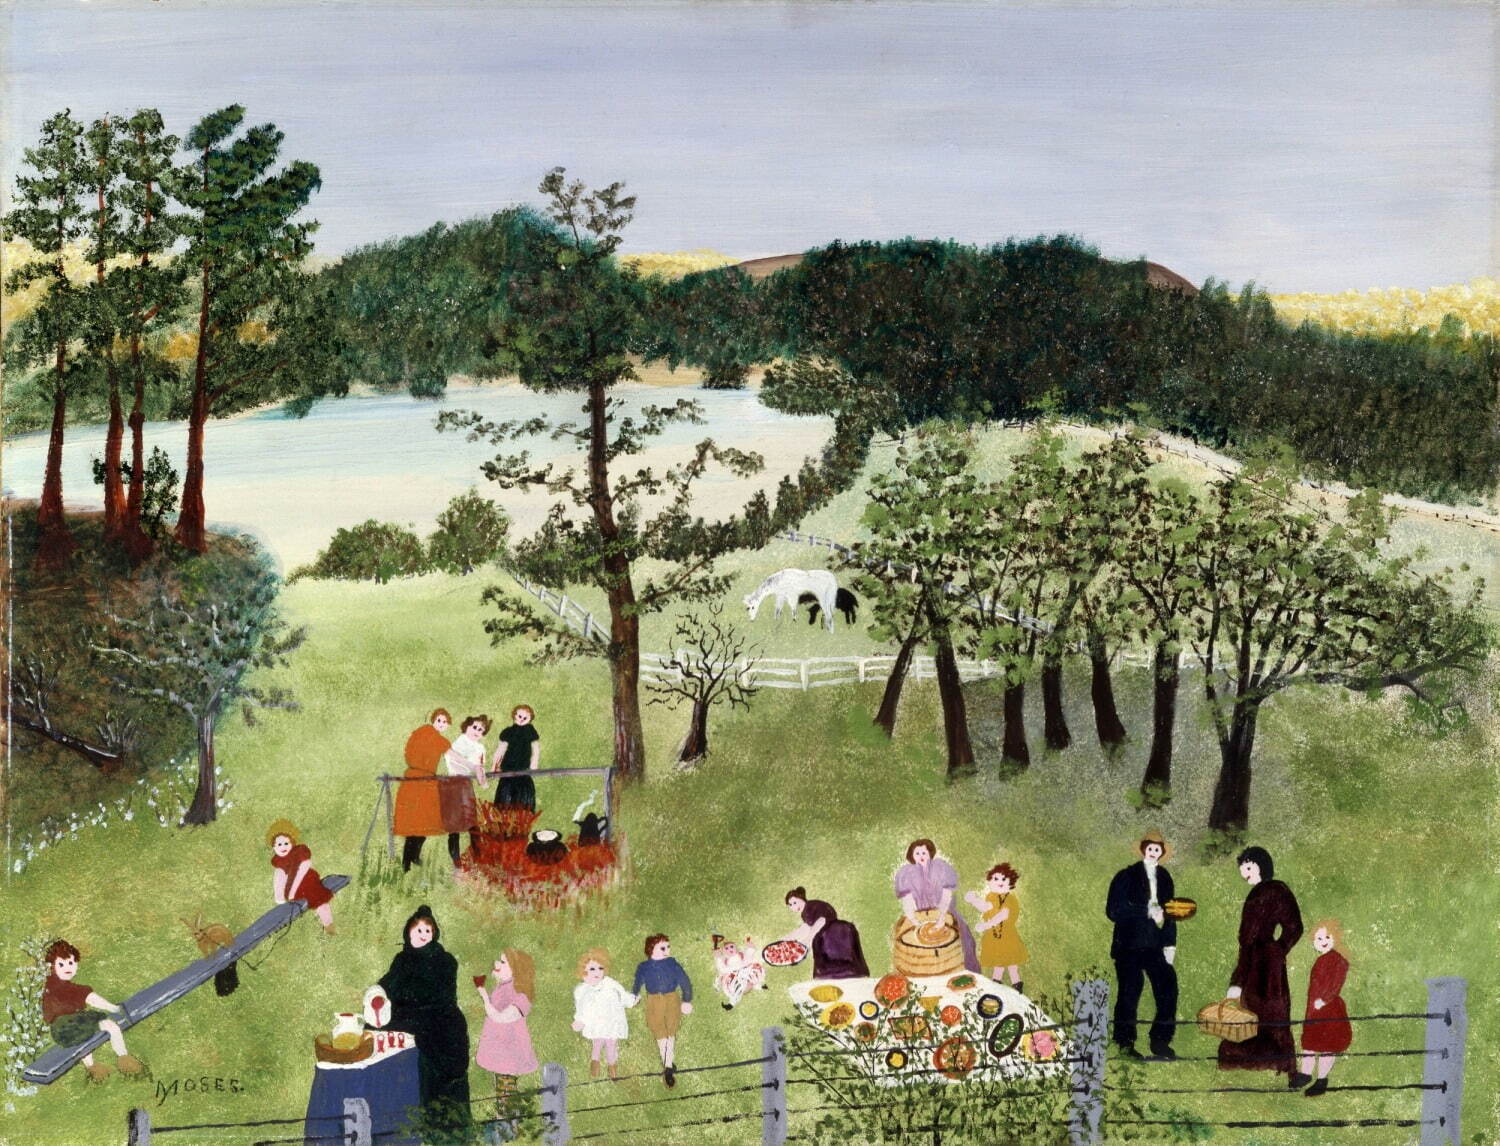 アンナ・メアリー・ロバートソン・“グランマ”・モーゼス《家族のピクニック》 1951年 個人蔵
(ギャラリー・セント・エティエンヌ、ニューヨーク寄託)